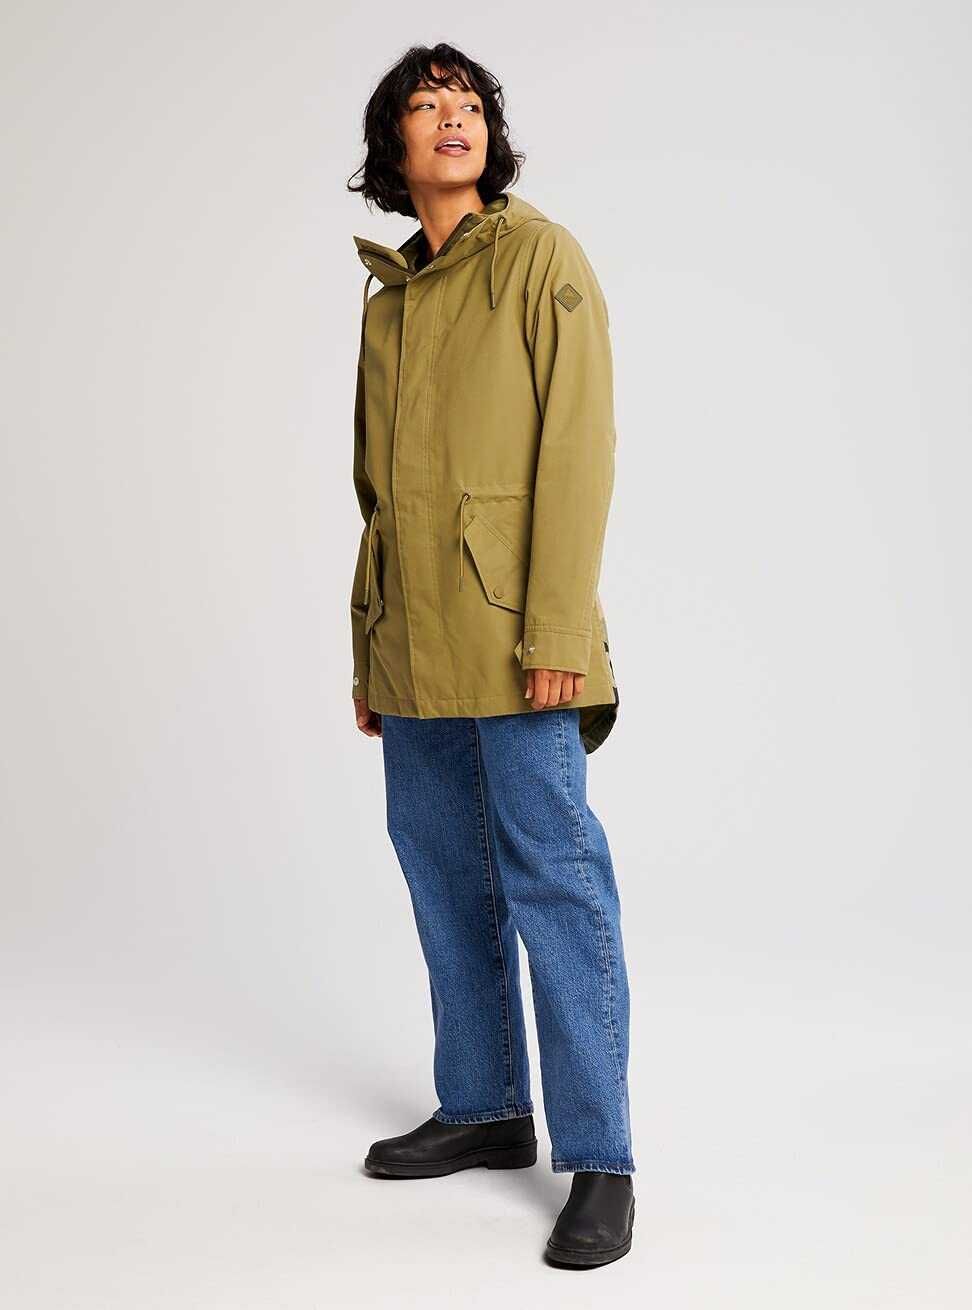 Burton Sadie, XL, есенно/пролетно, яке, ново, оригинално дамско яке